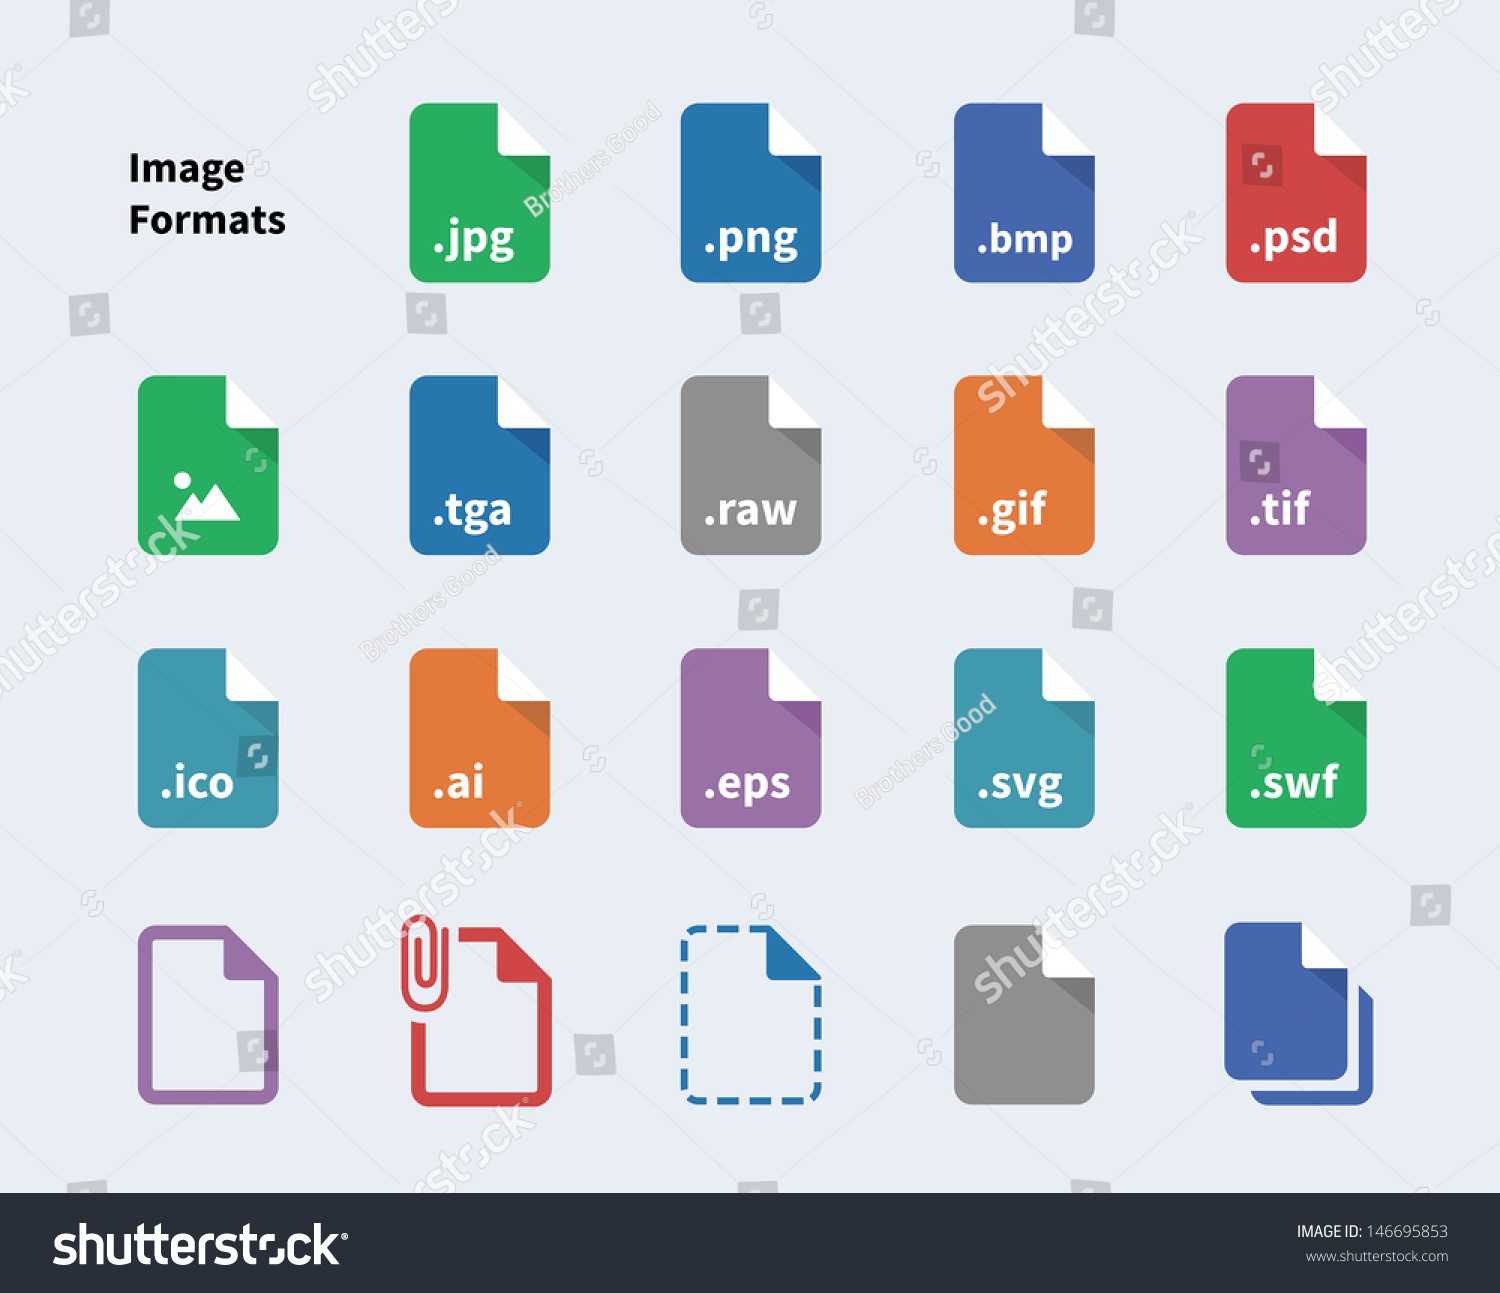 SVG of Set of Image File Formats icons. Vector illustration. svg